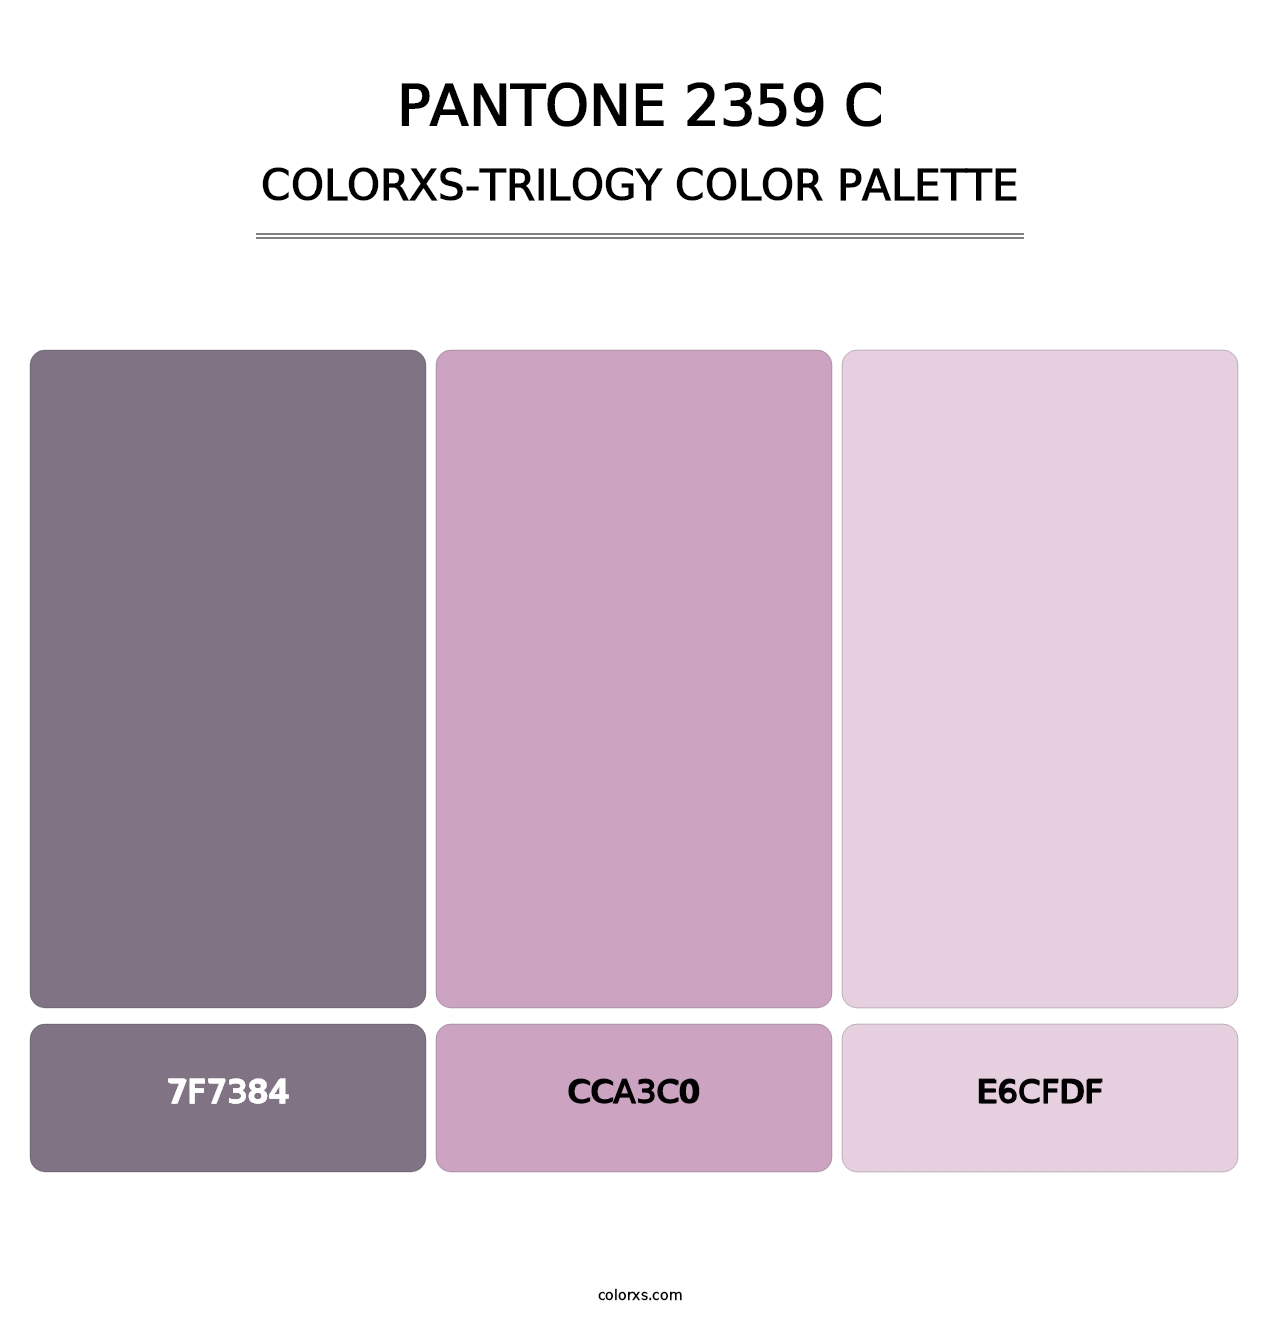 PANTONE 2359 C - Colorxs Trilogy Palette